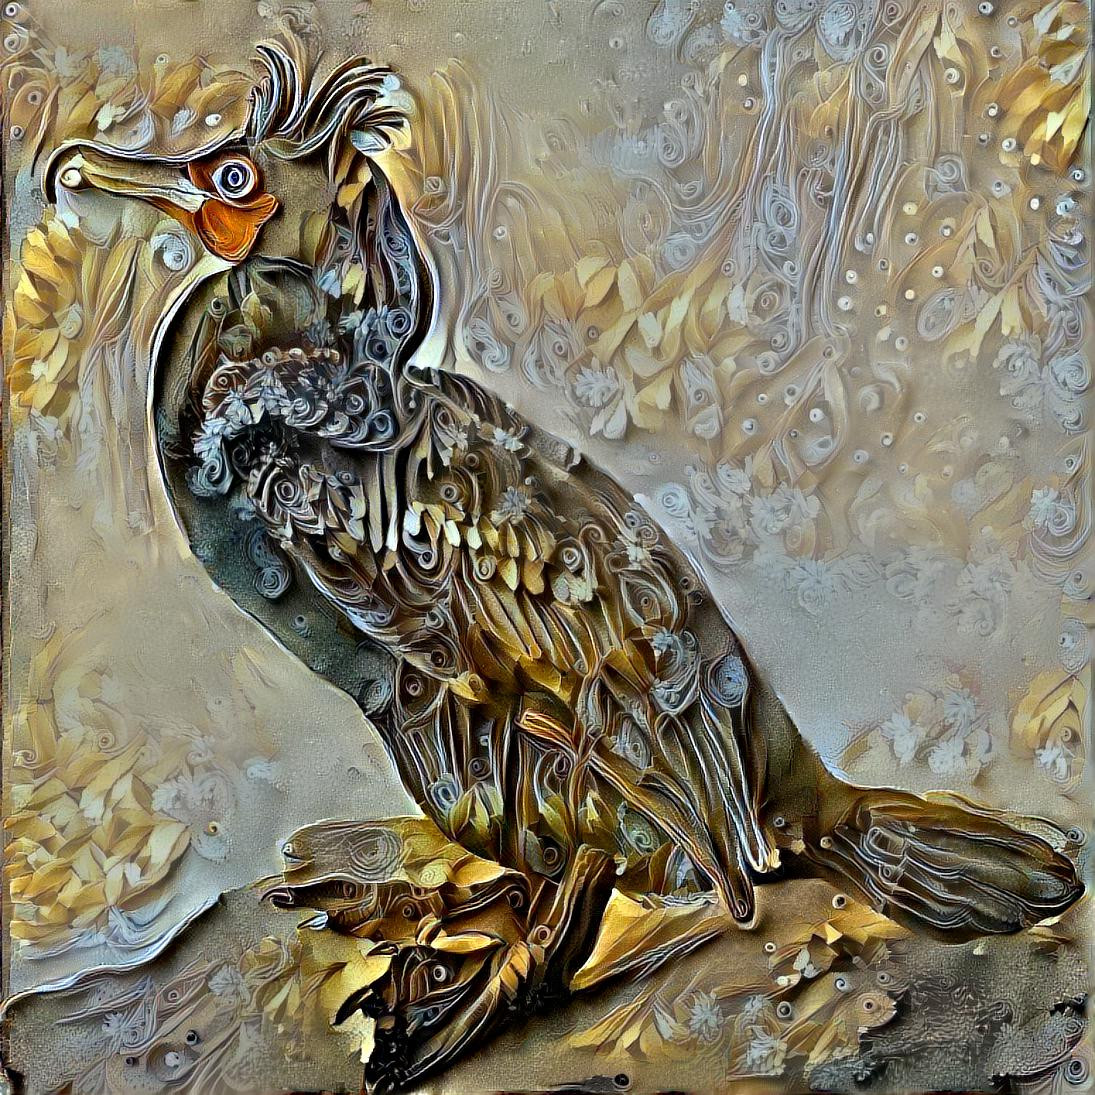 Cormorant 